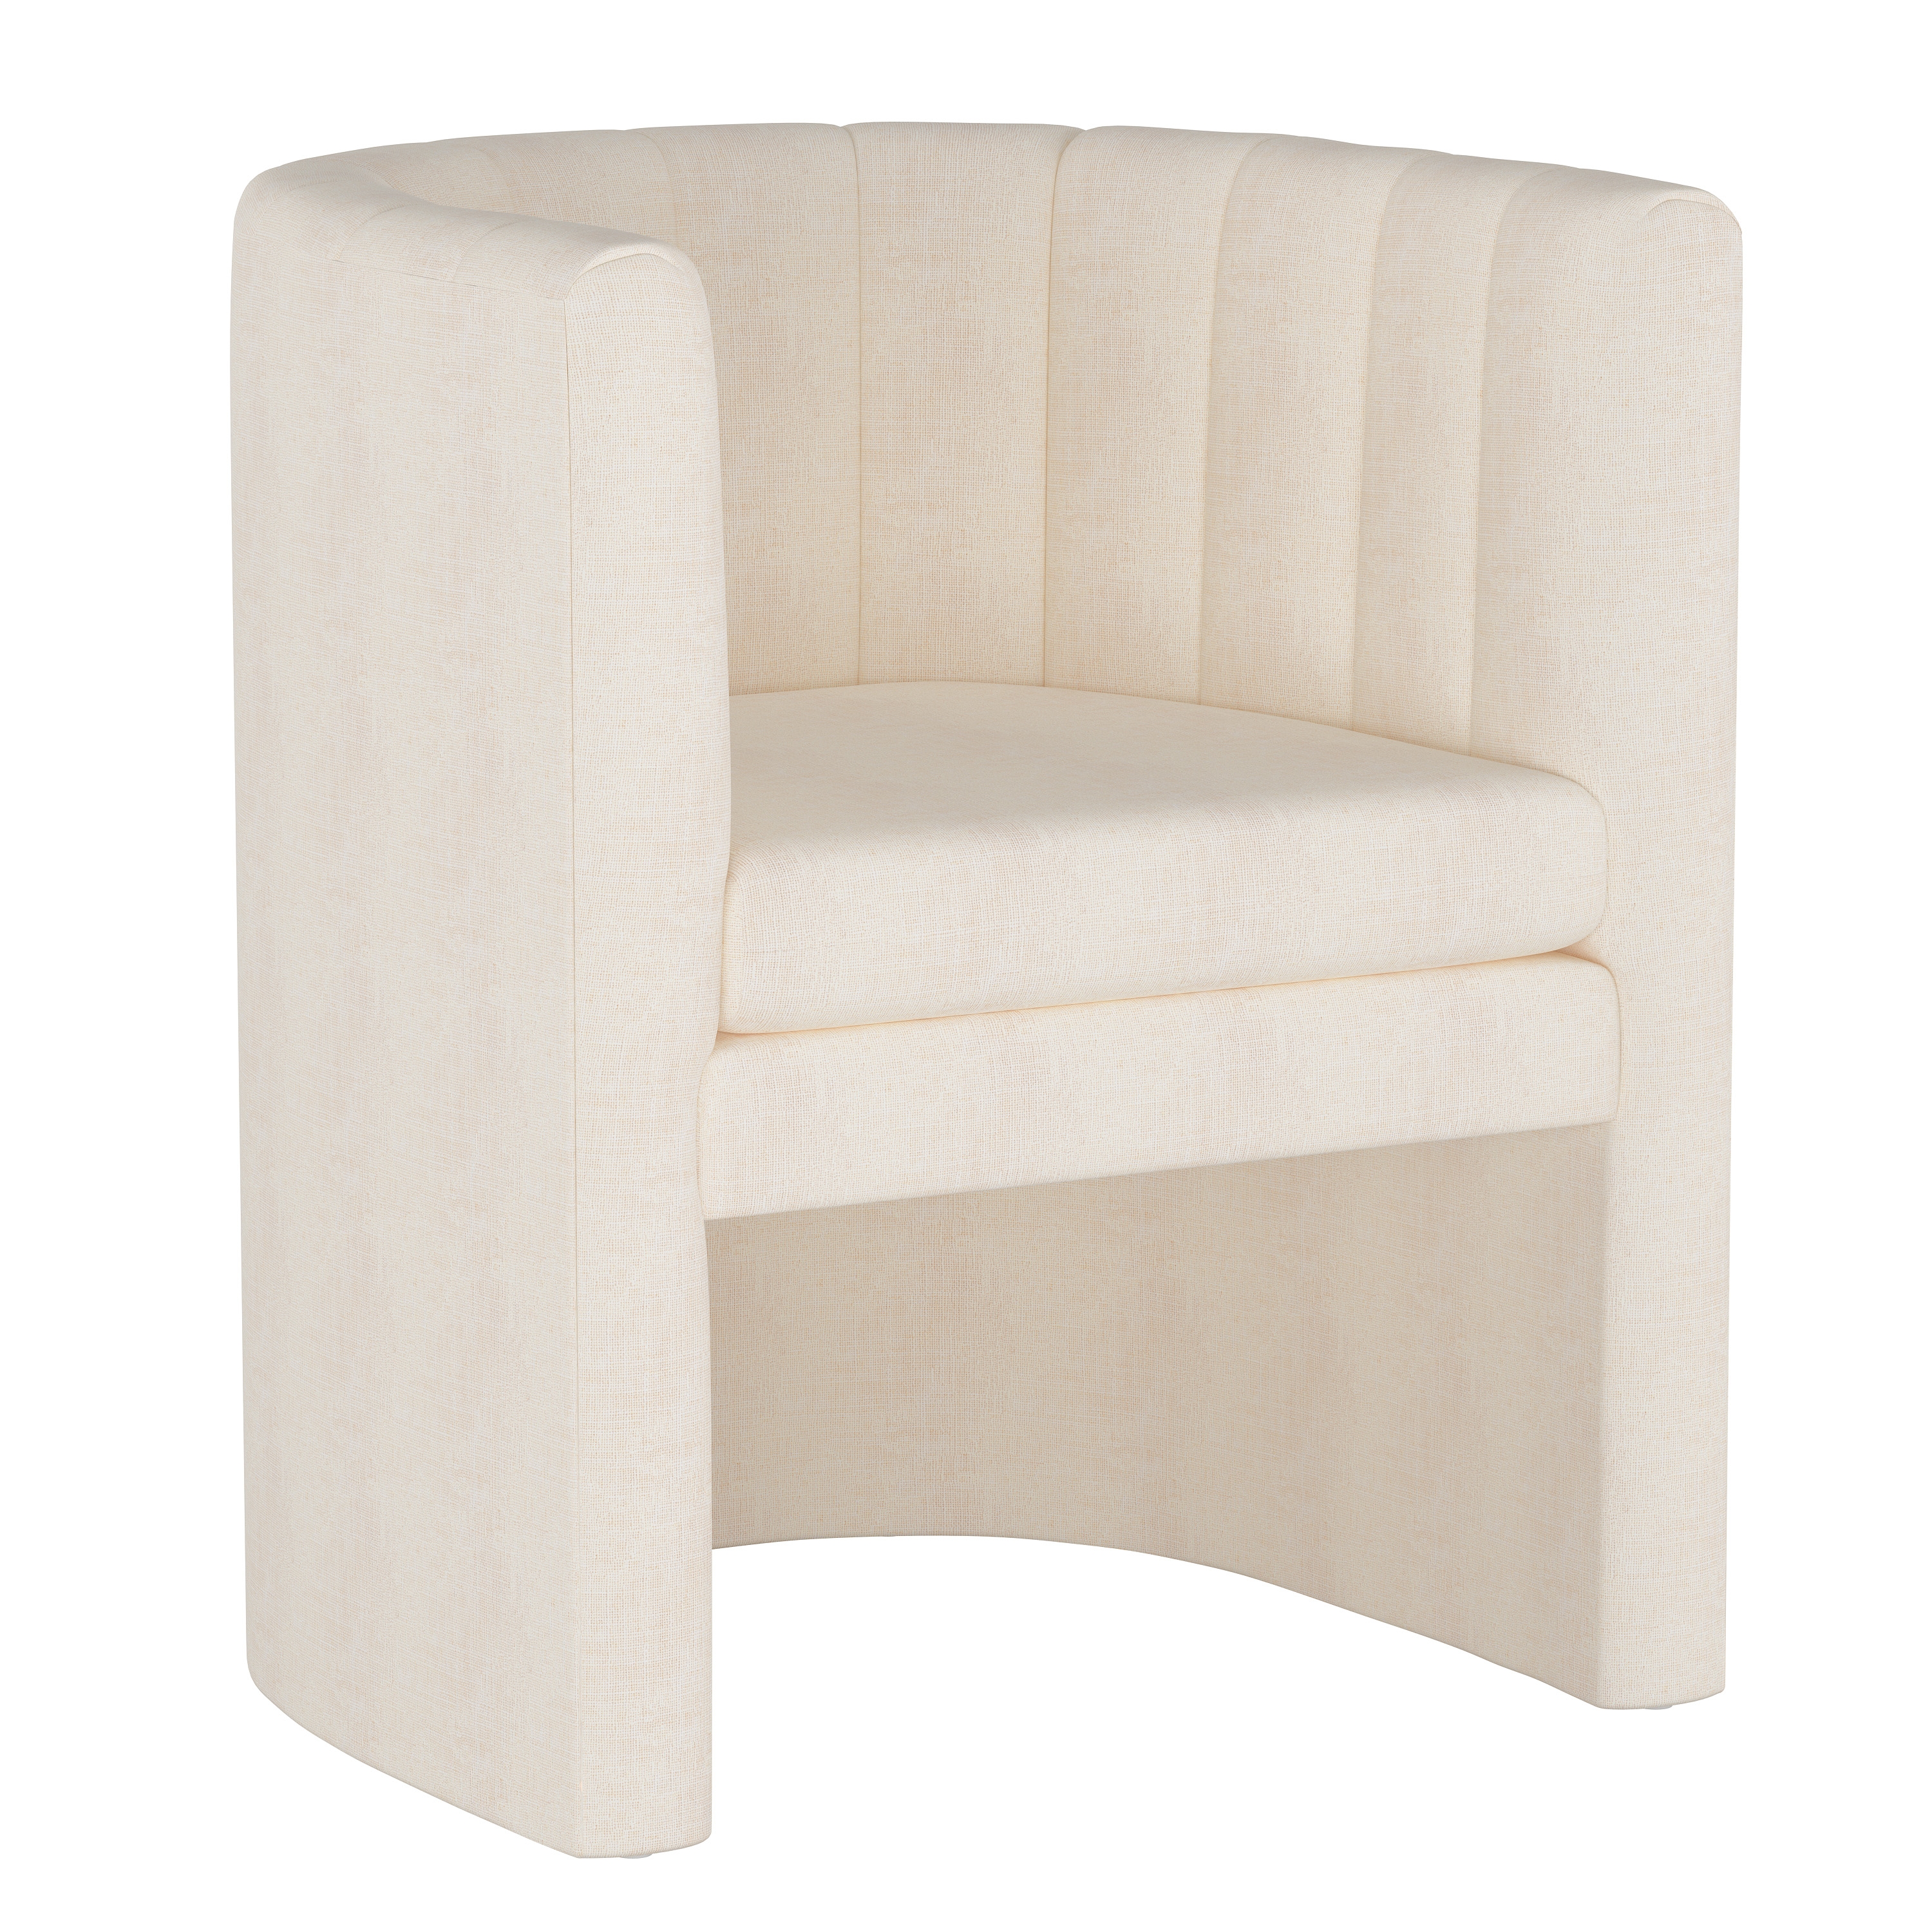 Wellshire Chair, White Linen - Image 0